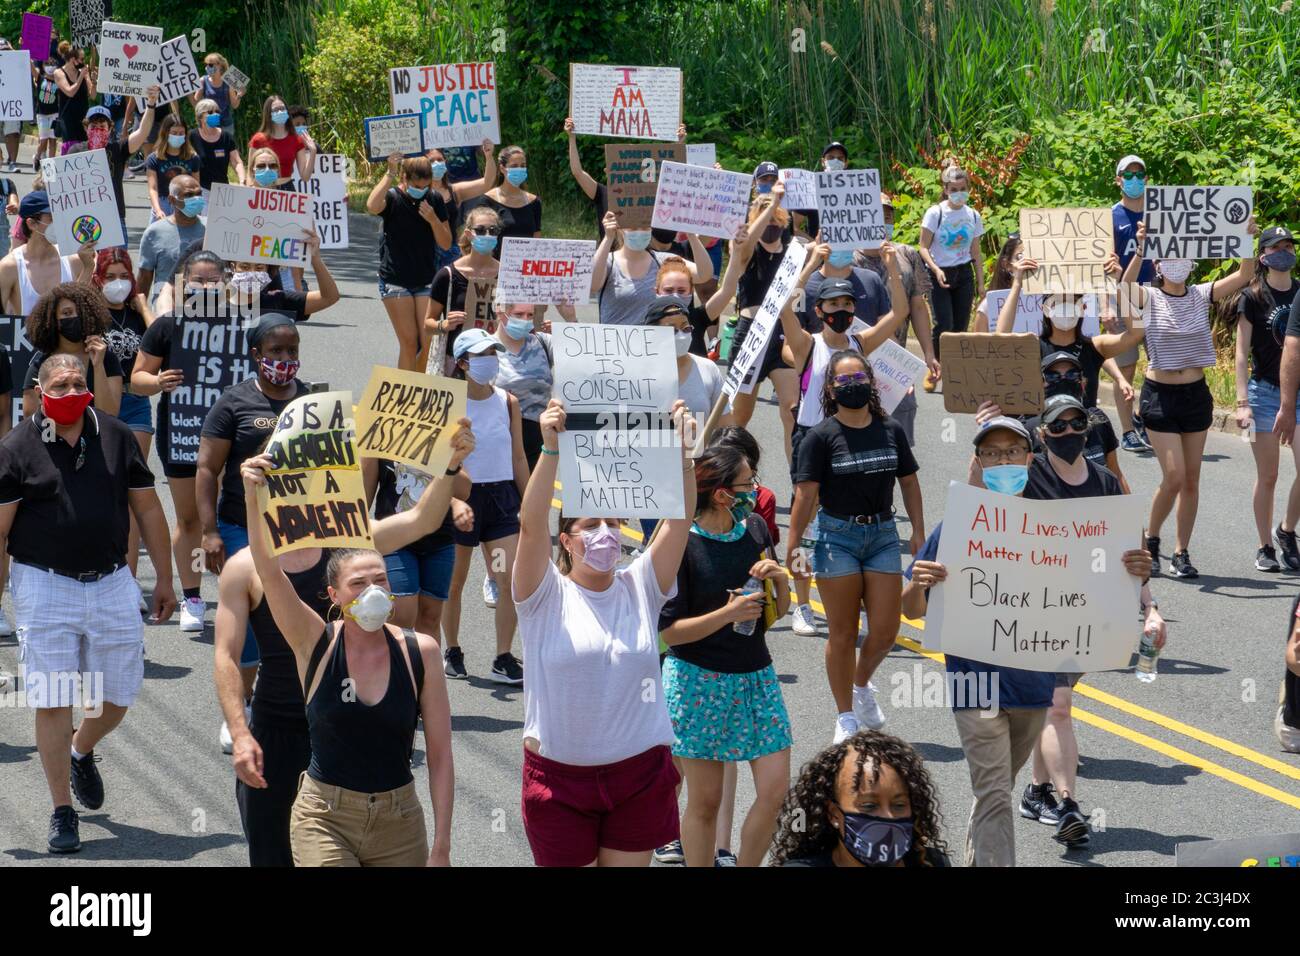 Le dix-septième mars Black Lives Matter Protest George Floyd - énorme foule bloquant la rue tenant des panneaux blm à Teaneck, New Jersey Banque D'Images